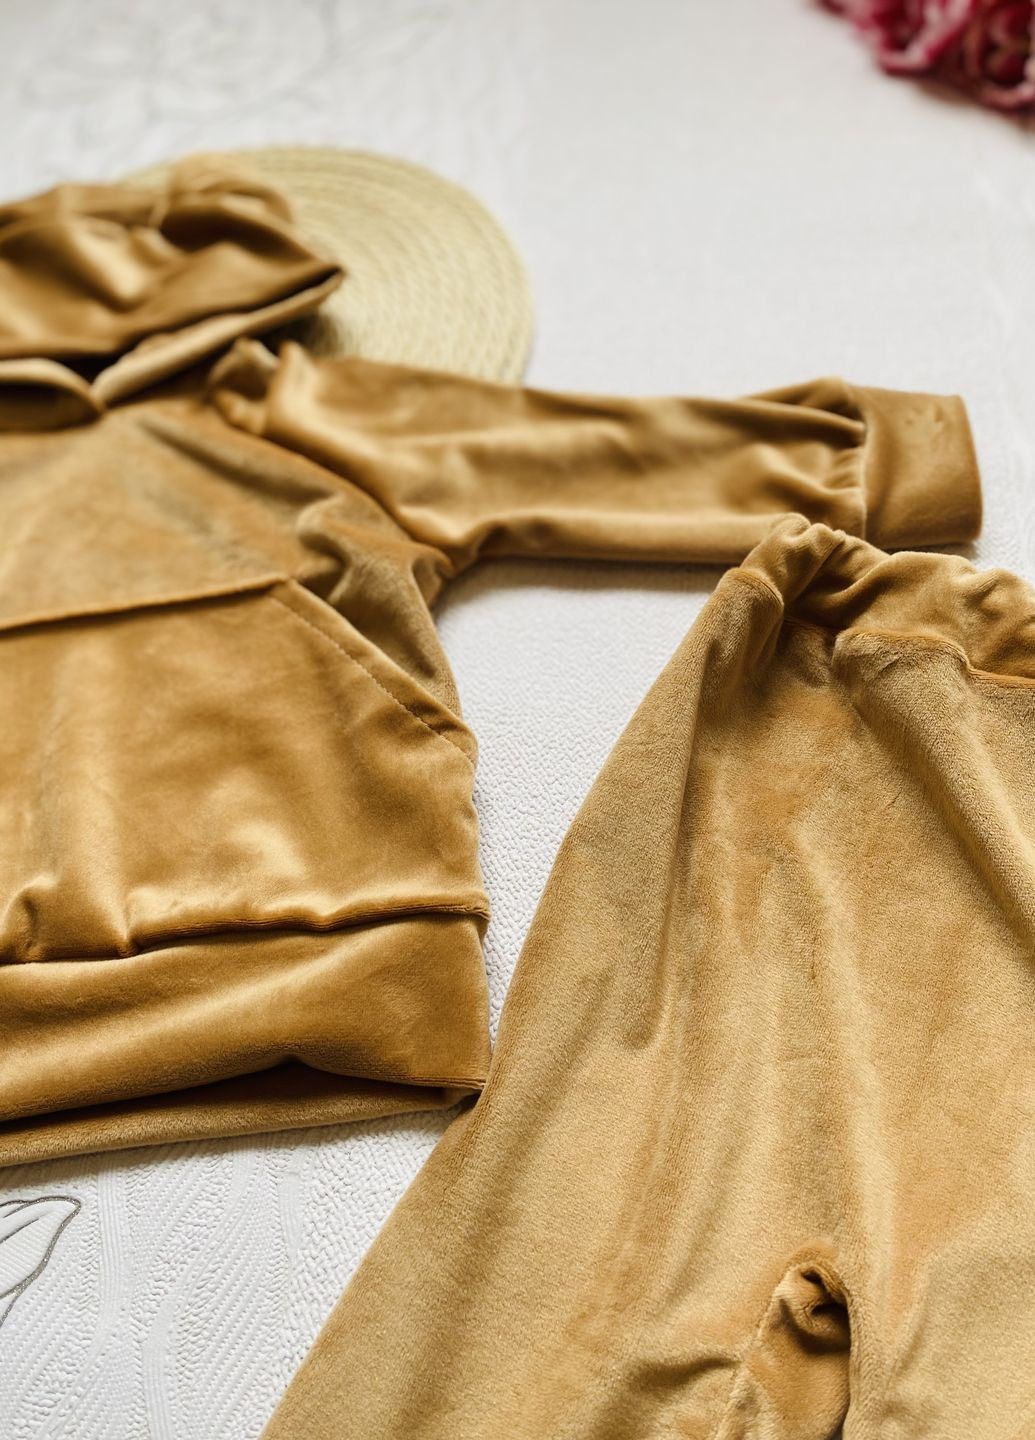 Золотой демисезонный костюм детский велюровий демисезонний золотистый Винни Пух